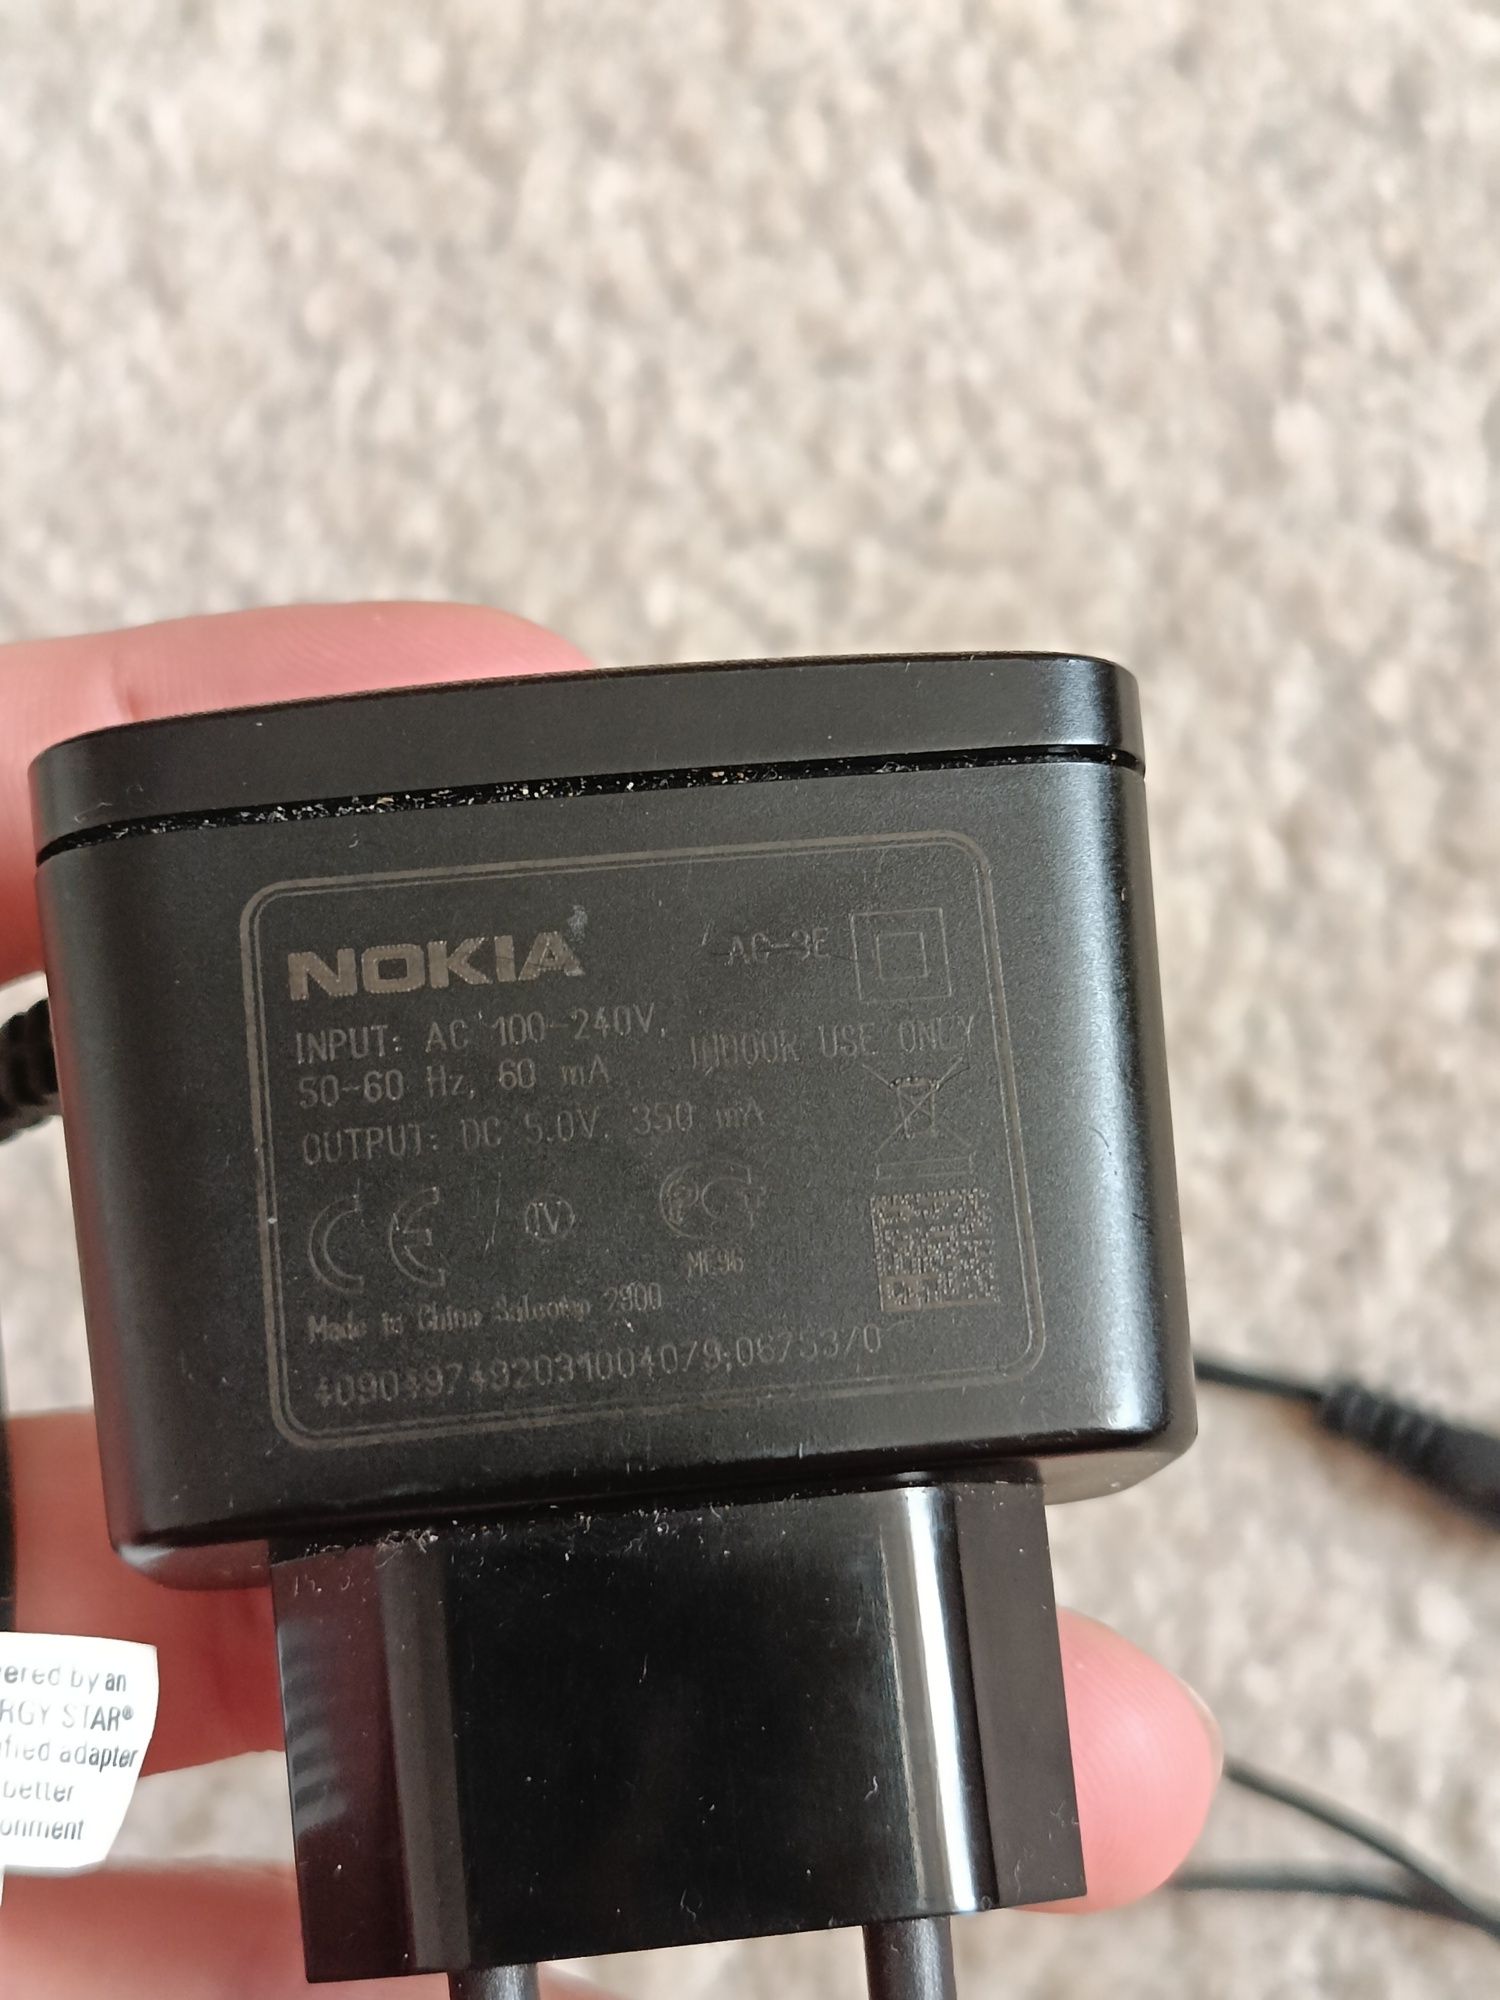 Nokia ładowarka ac-3e cienki wtyk